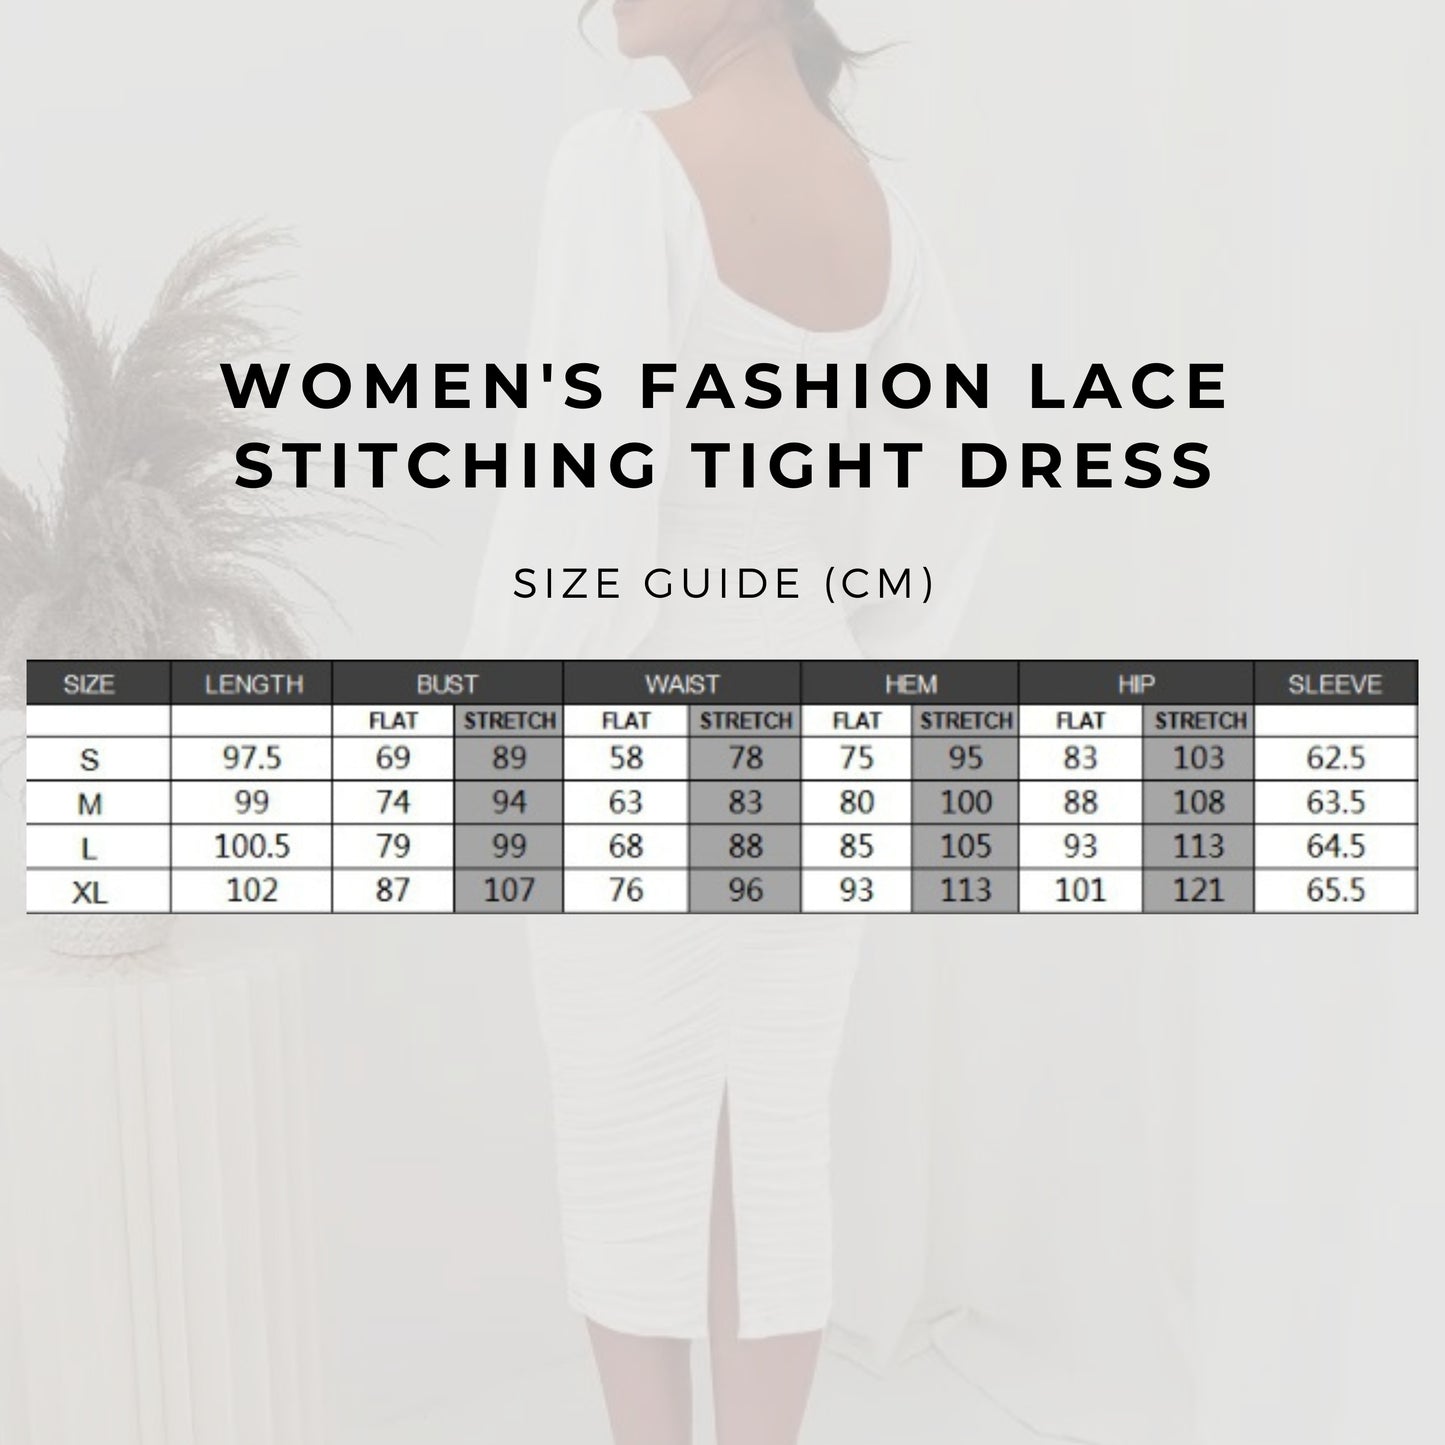 Women's Fashion Lace Stitching Tight Dress